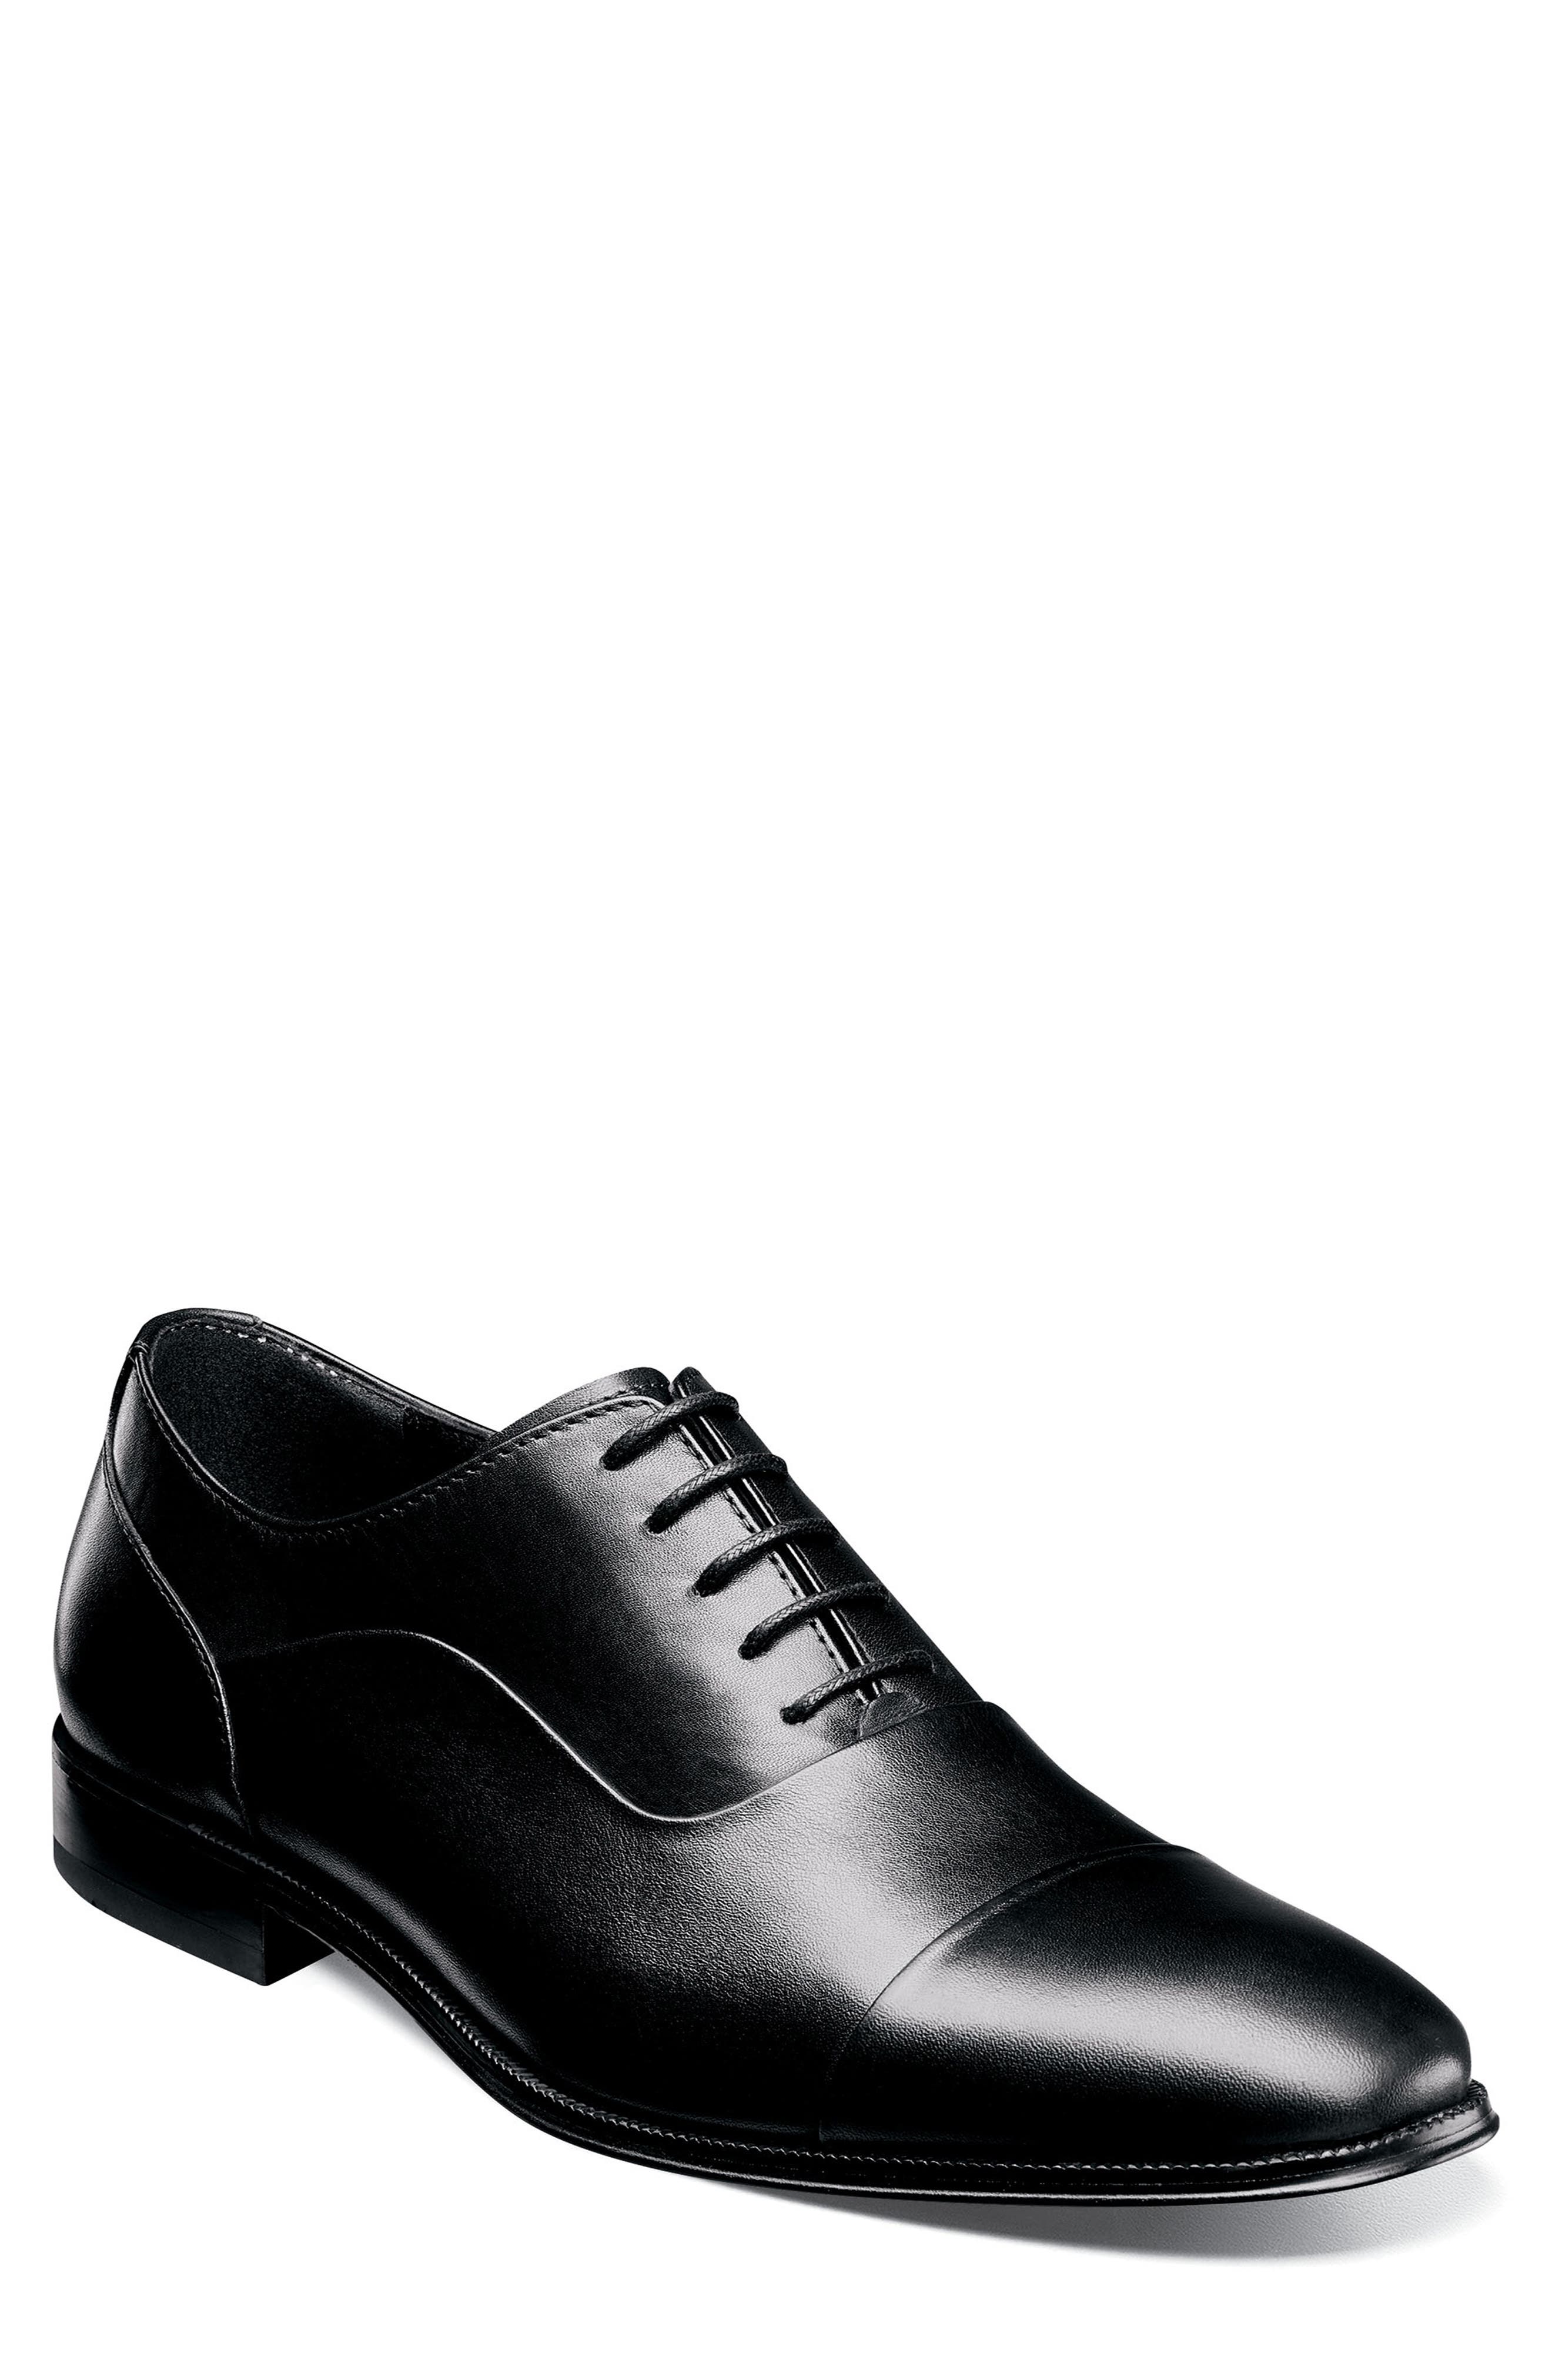 black shoes men